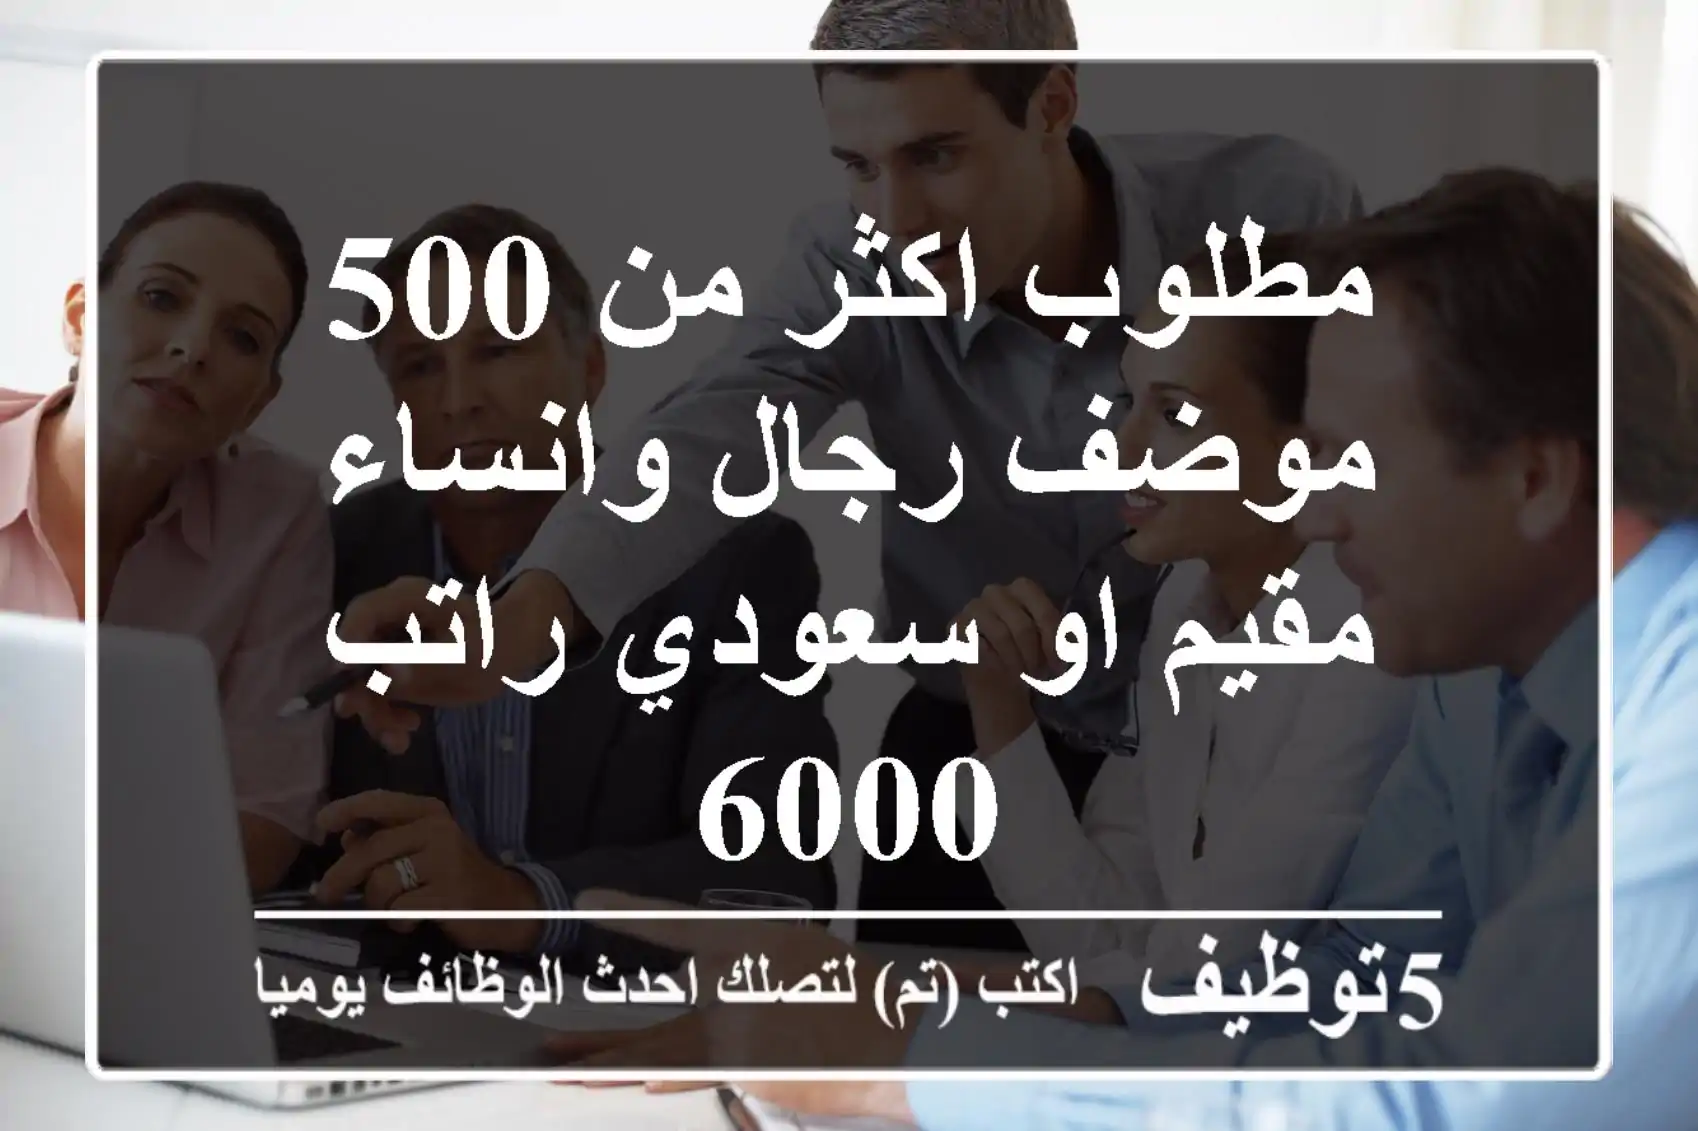 مطلوب اكثر من 500 موضف رجال وانساء مقيم او سعودي راتب 6000